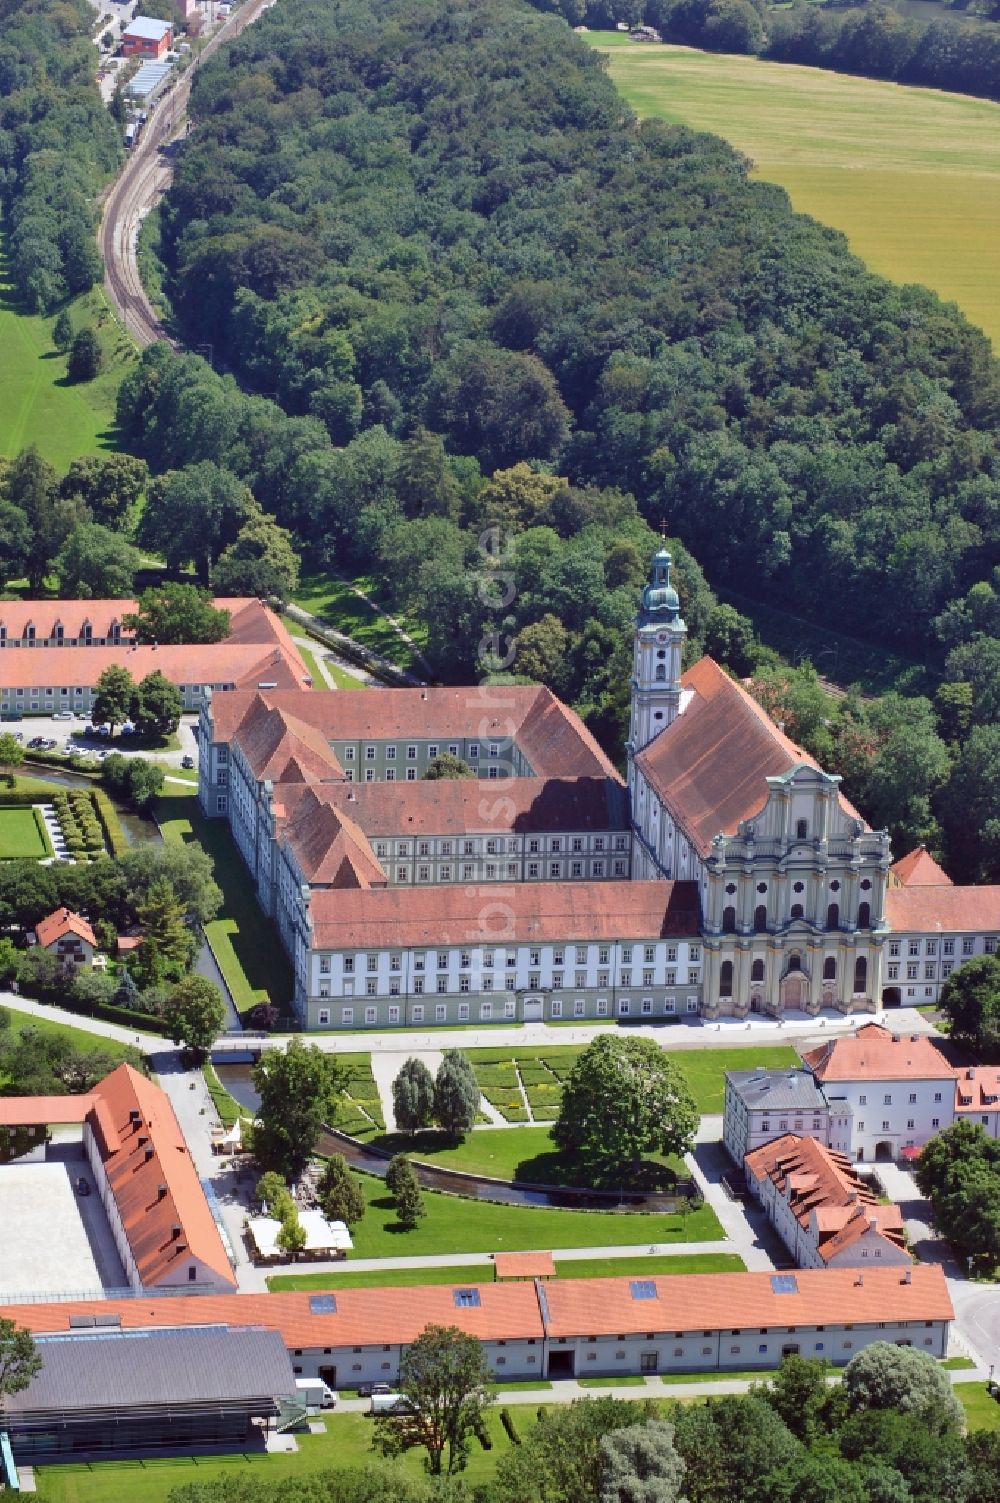 Luftbild Fürstenfeldbruck - Gebäudekomplex von Kloster Fürstenfeld bei Fürstenfeldbruck im Bundesland Bayern, Deutschland